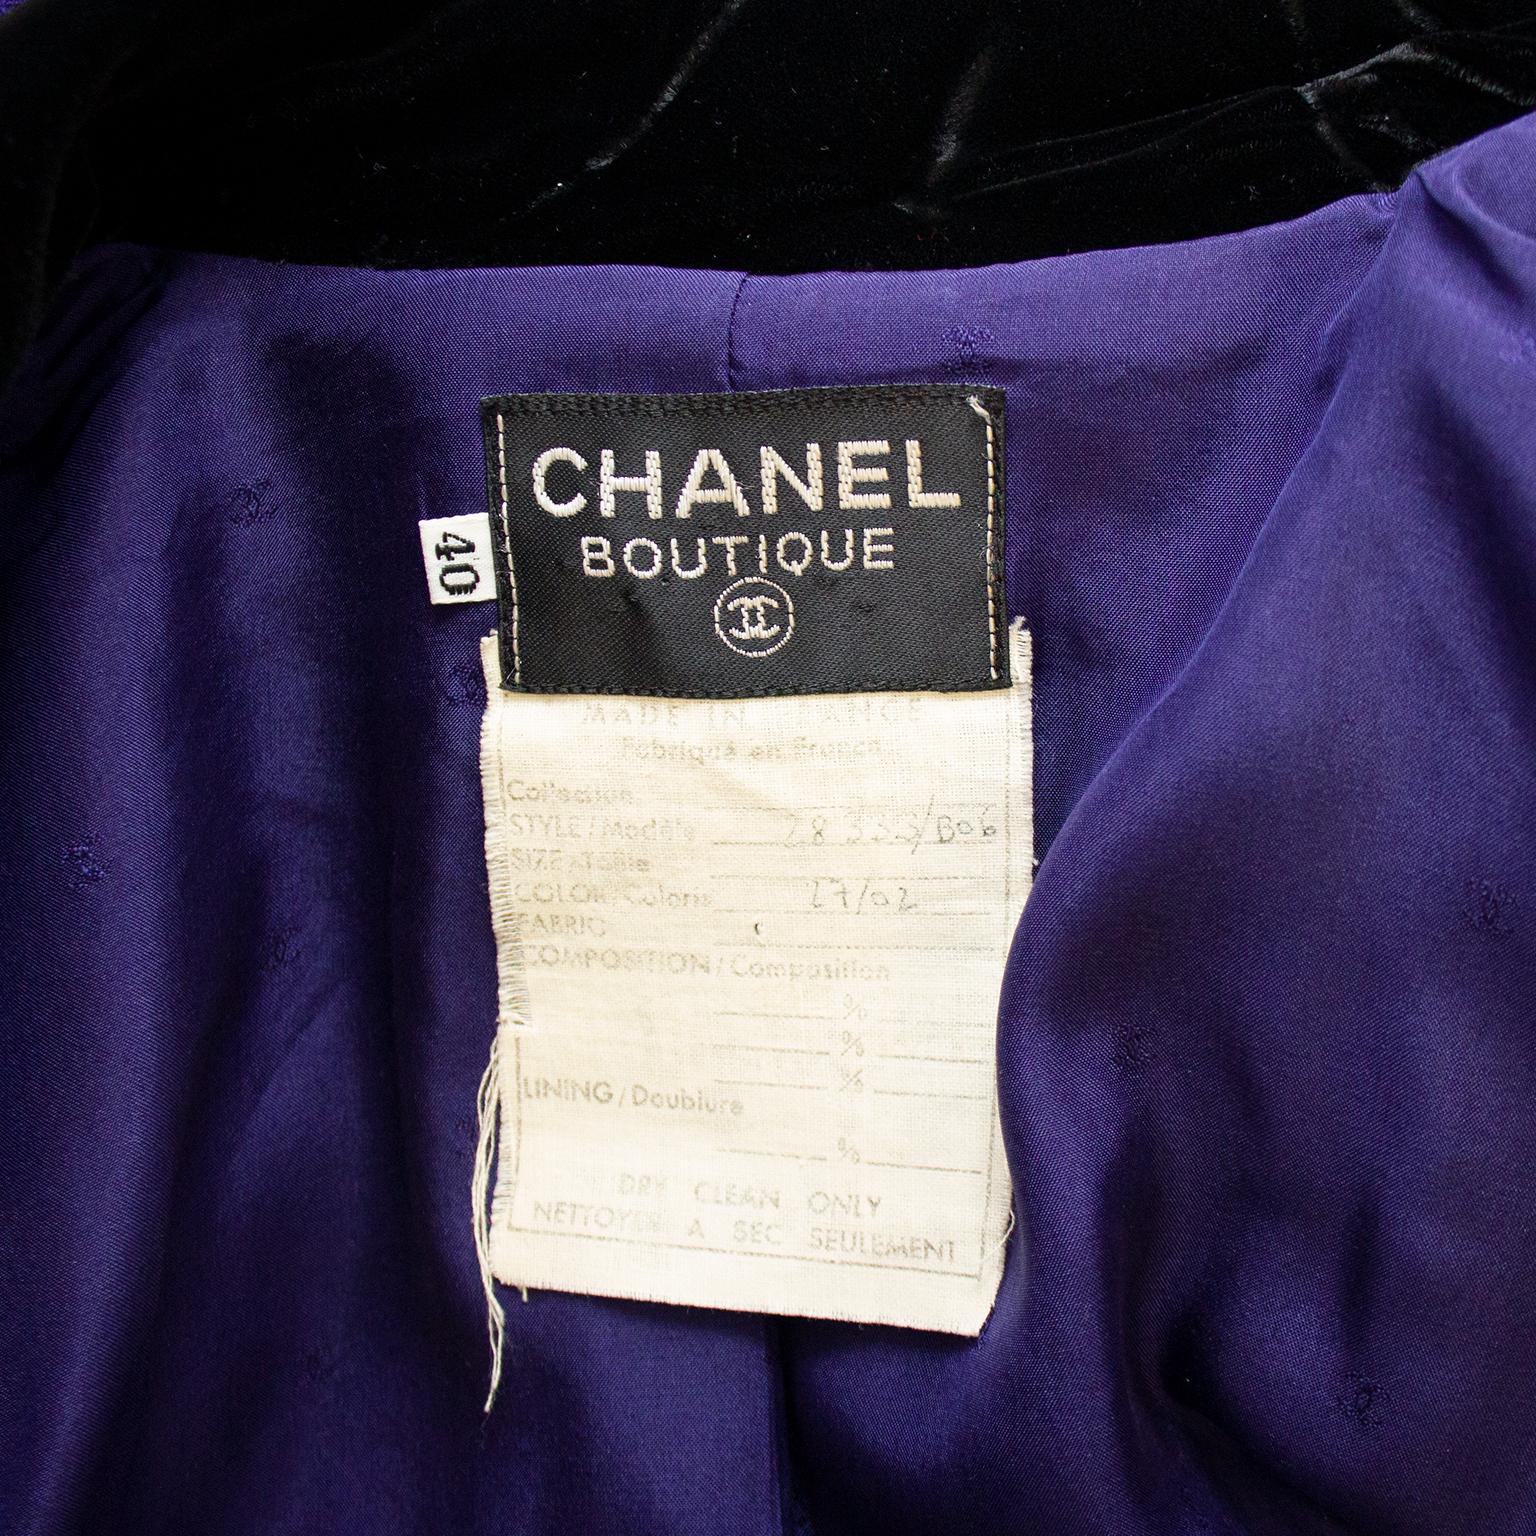 1980s Chanel Purple and Black Velvet Coat Dress and Skirt Ensemble  For Sale 1